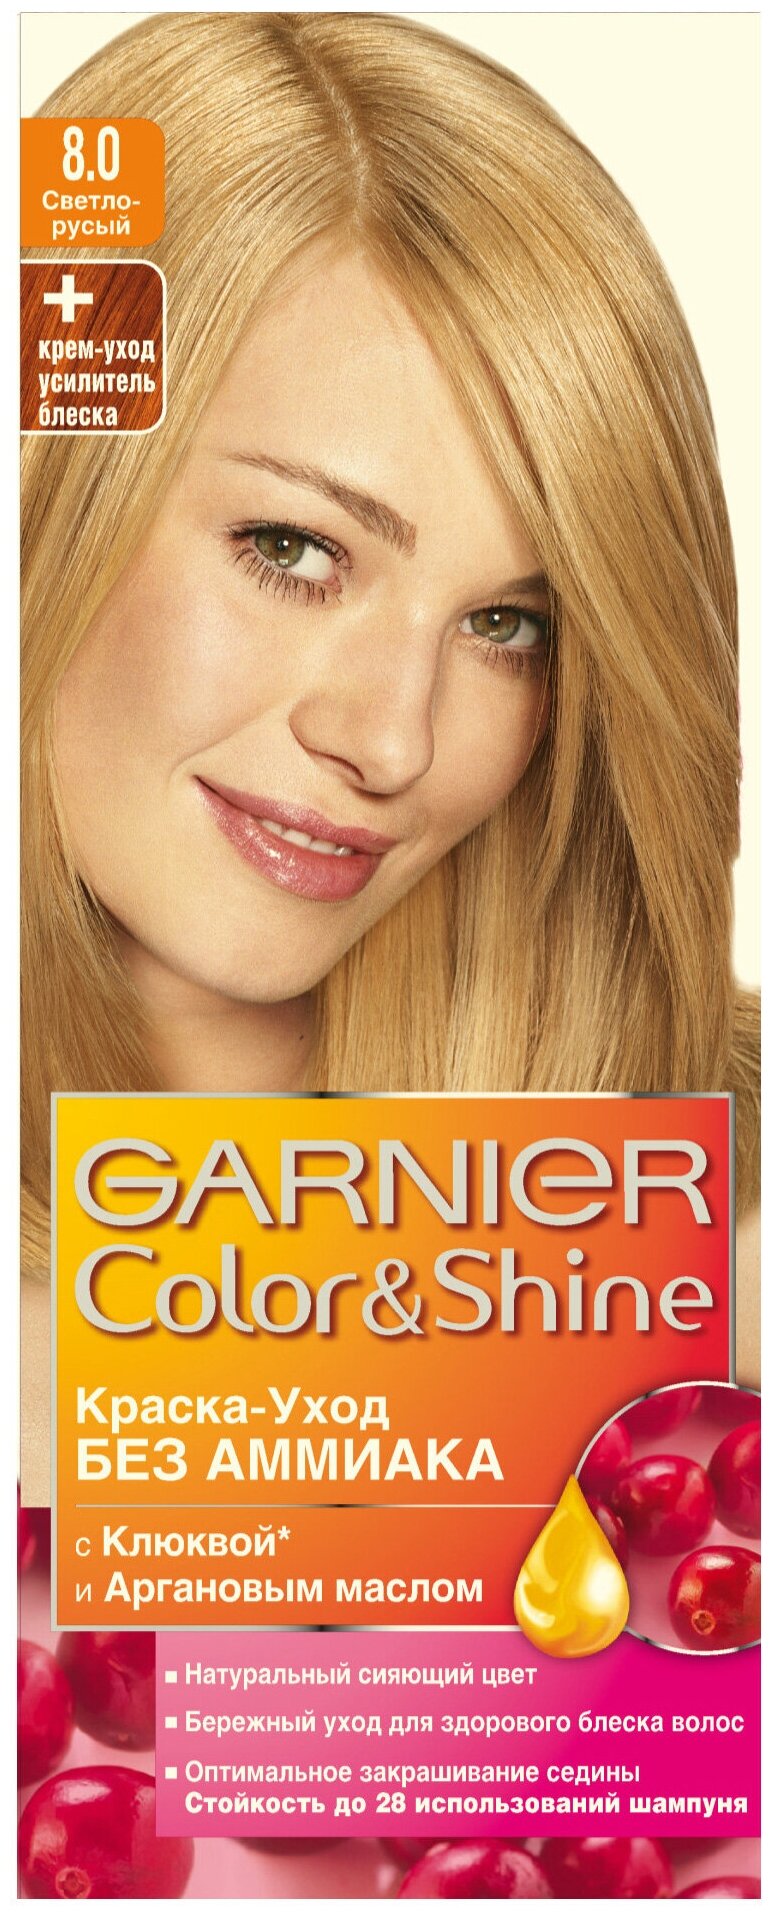 GARNIER "Color & Shine" - вид окрашивания: полустойкое